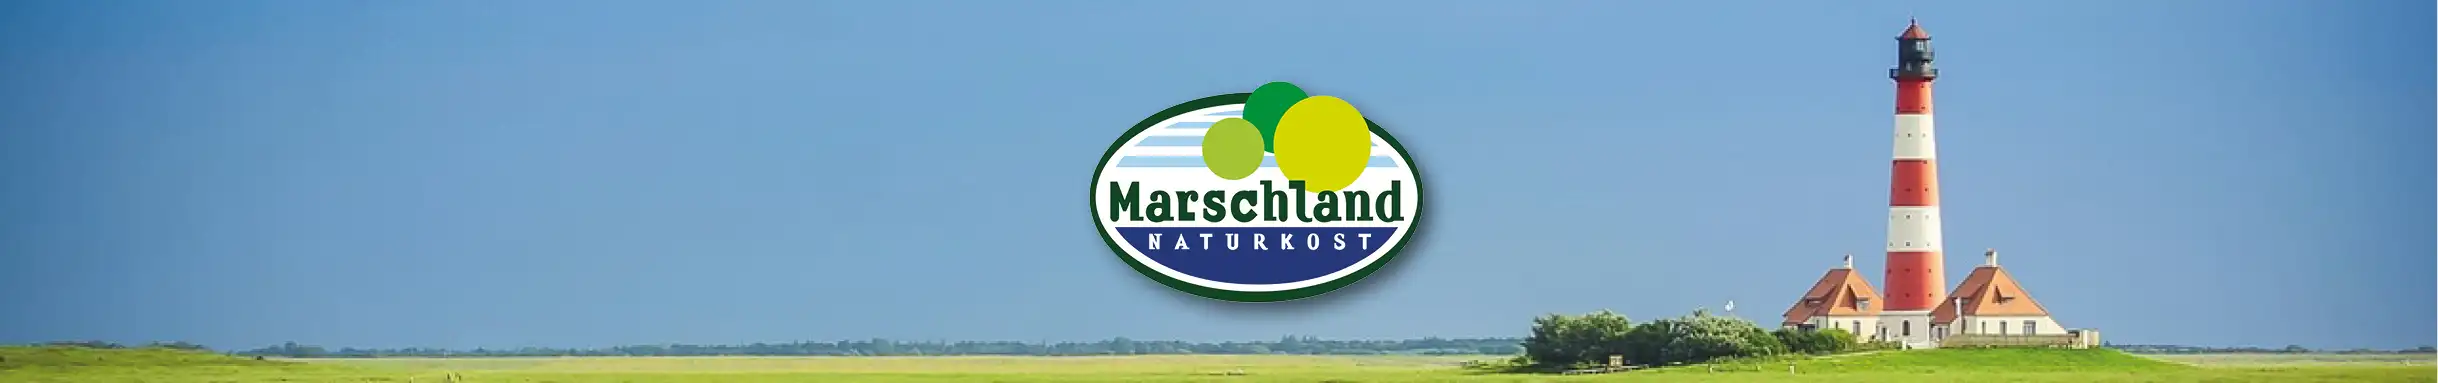 Markenbanner Marschland